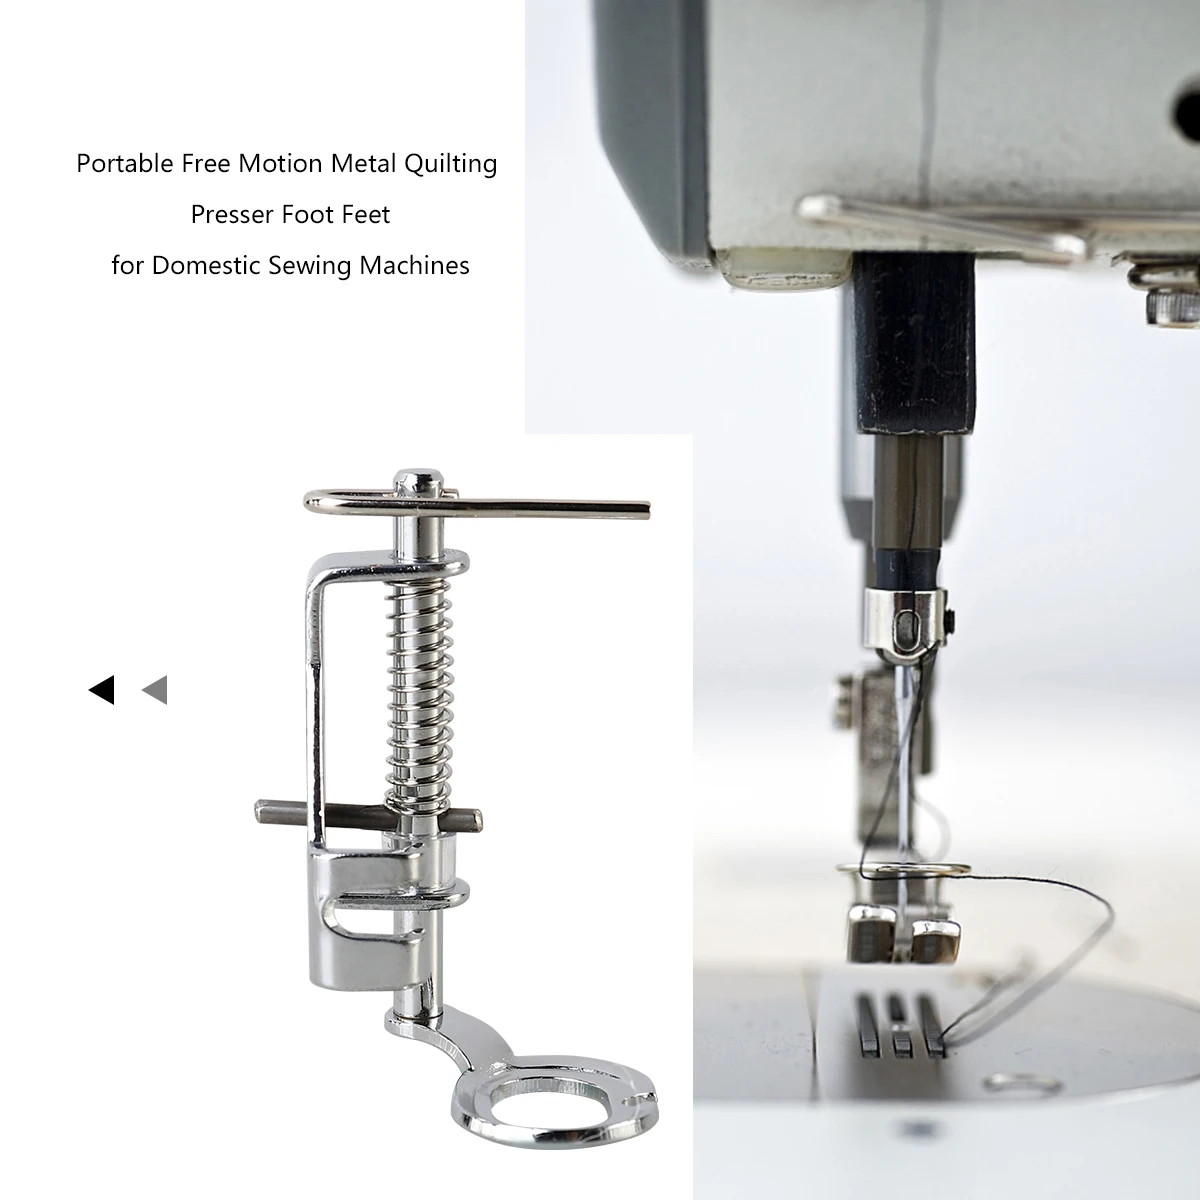 Портативная металлическая прижимная лапка свободного движения для домашних швейных машин(серебро